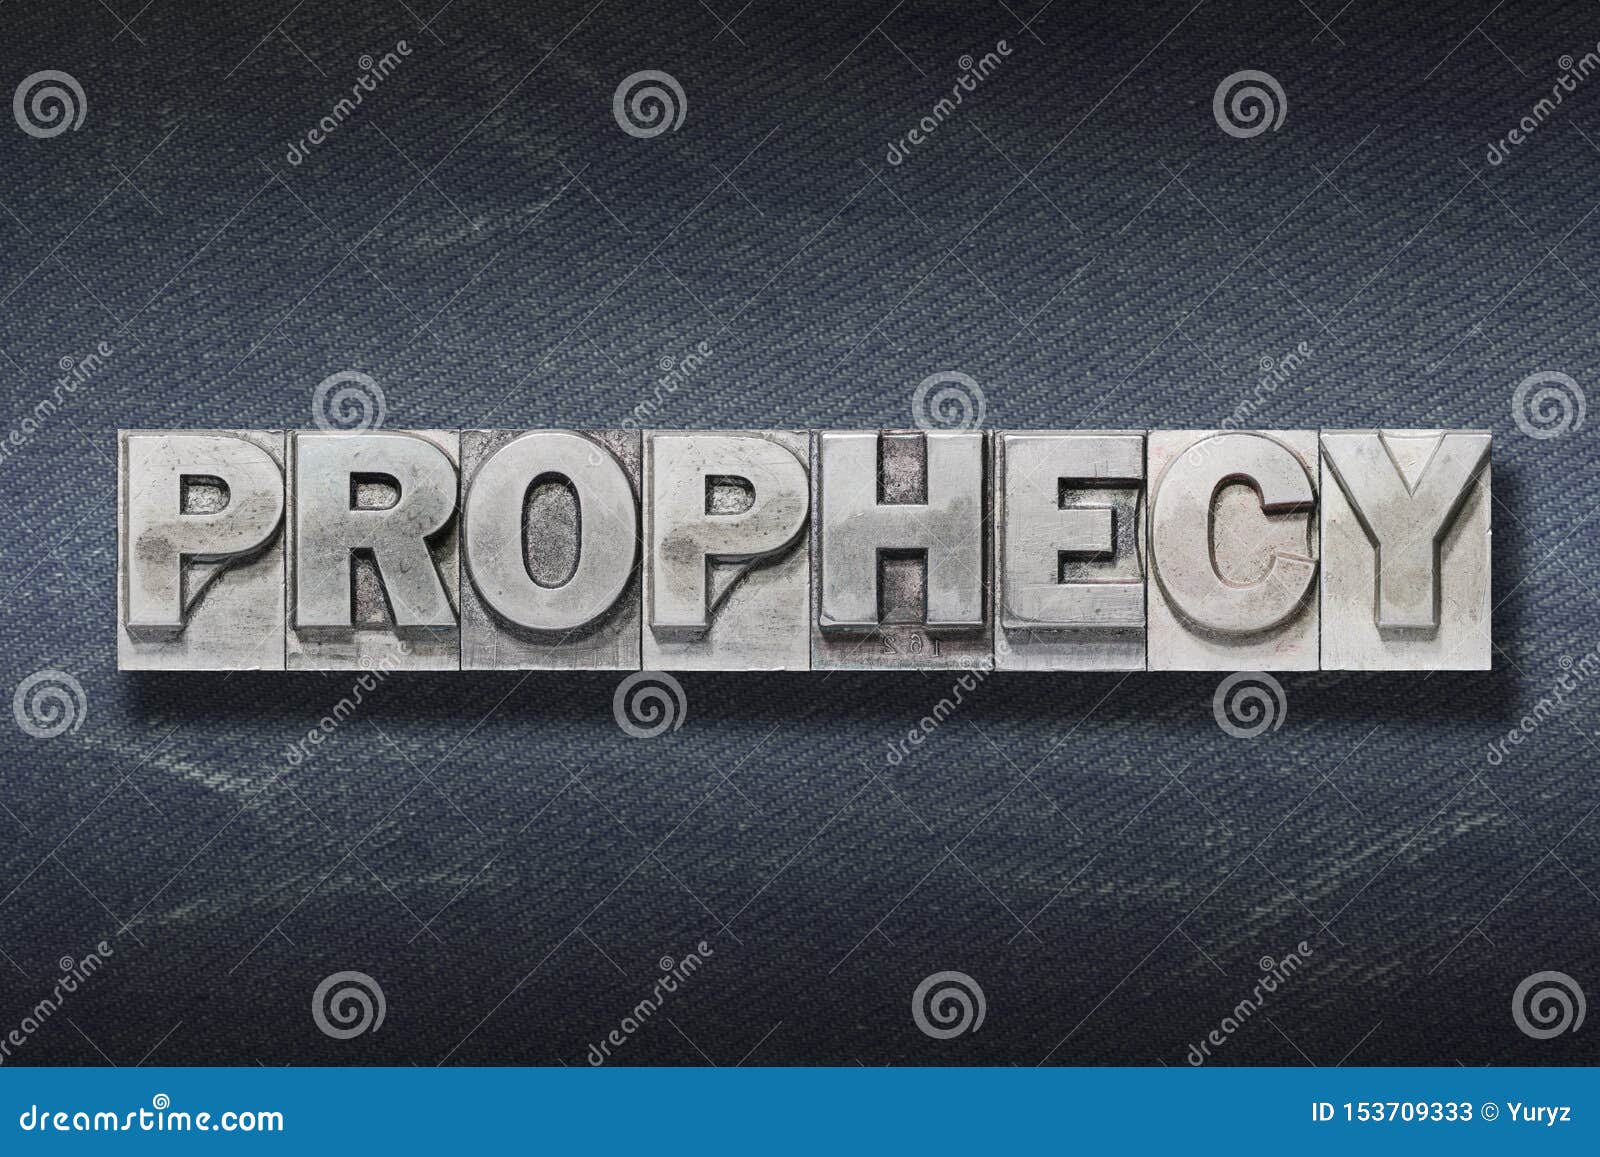 prophecy word den